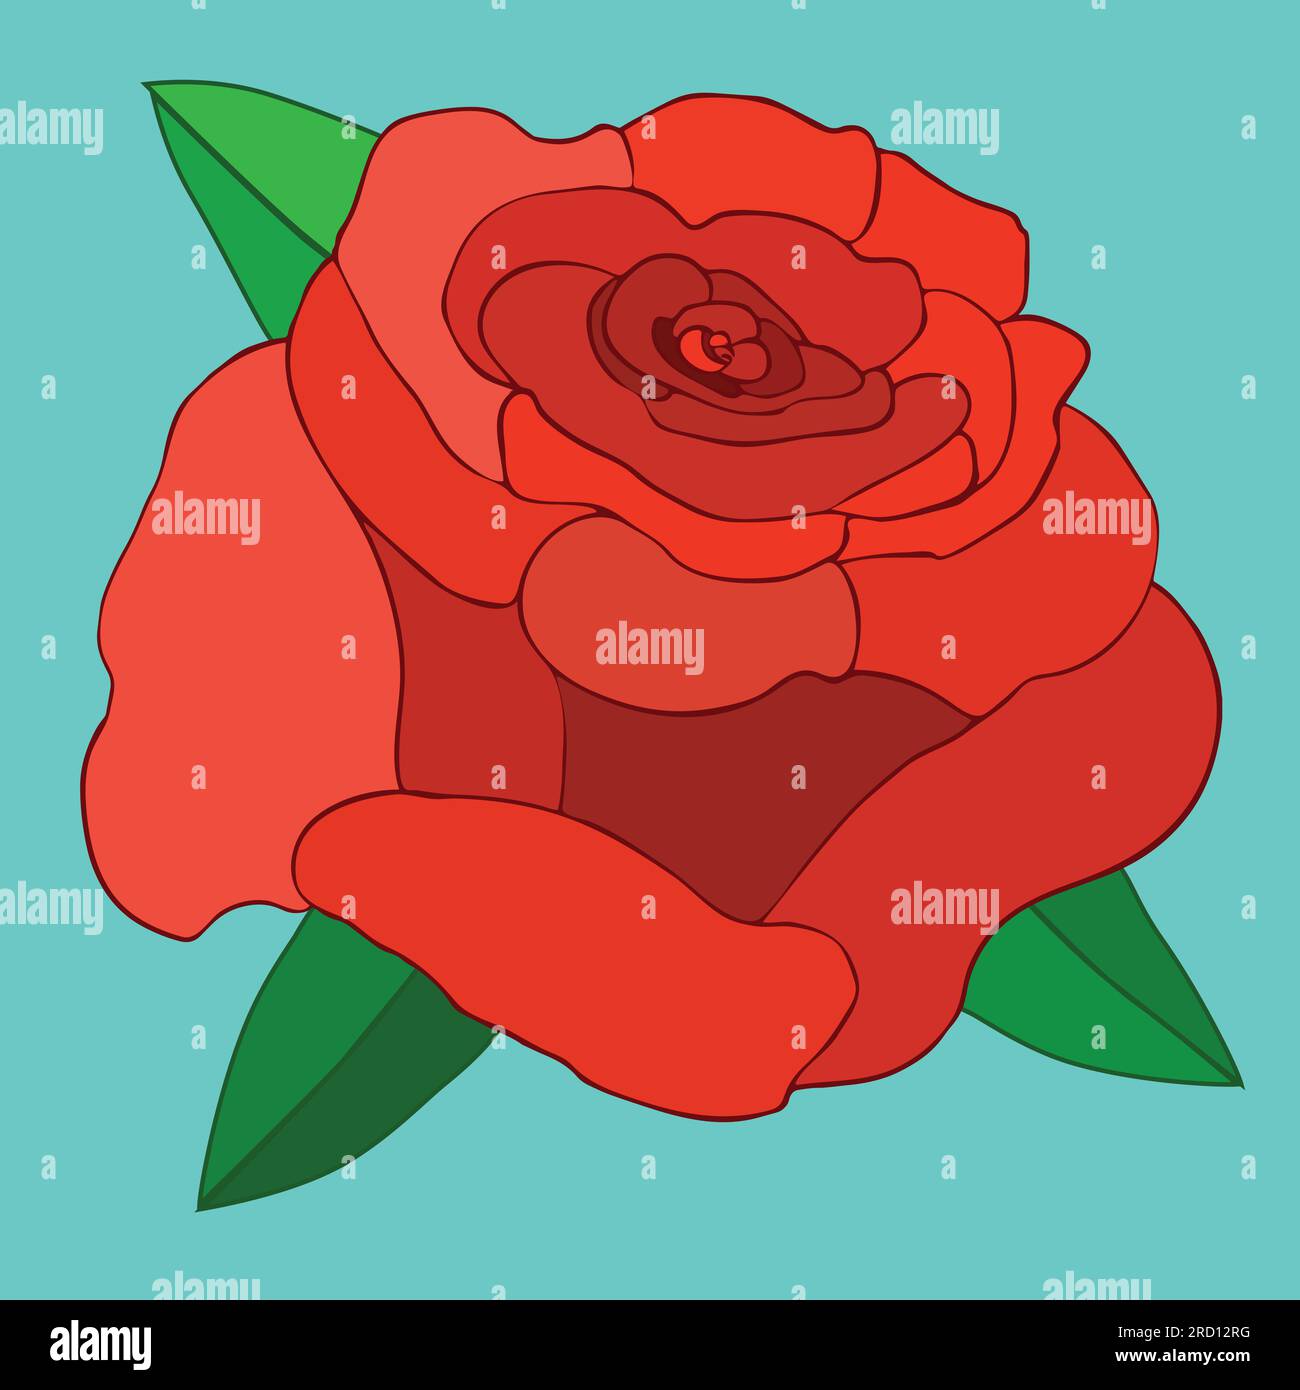 Un'illustrazione vettoriale di una grande rosa rossa. La rosa è riempita con disegno a linee e sono visibili alcune lamelle verdi. Lo sfondo è blu tenue. Illustrazione Vettoriale